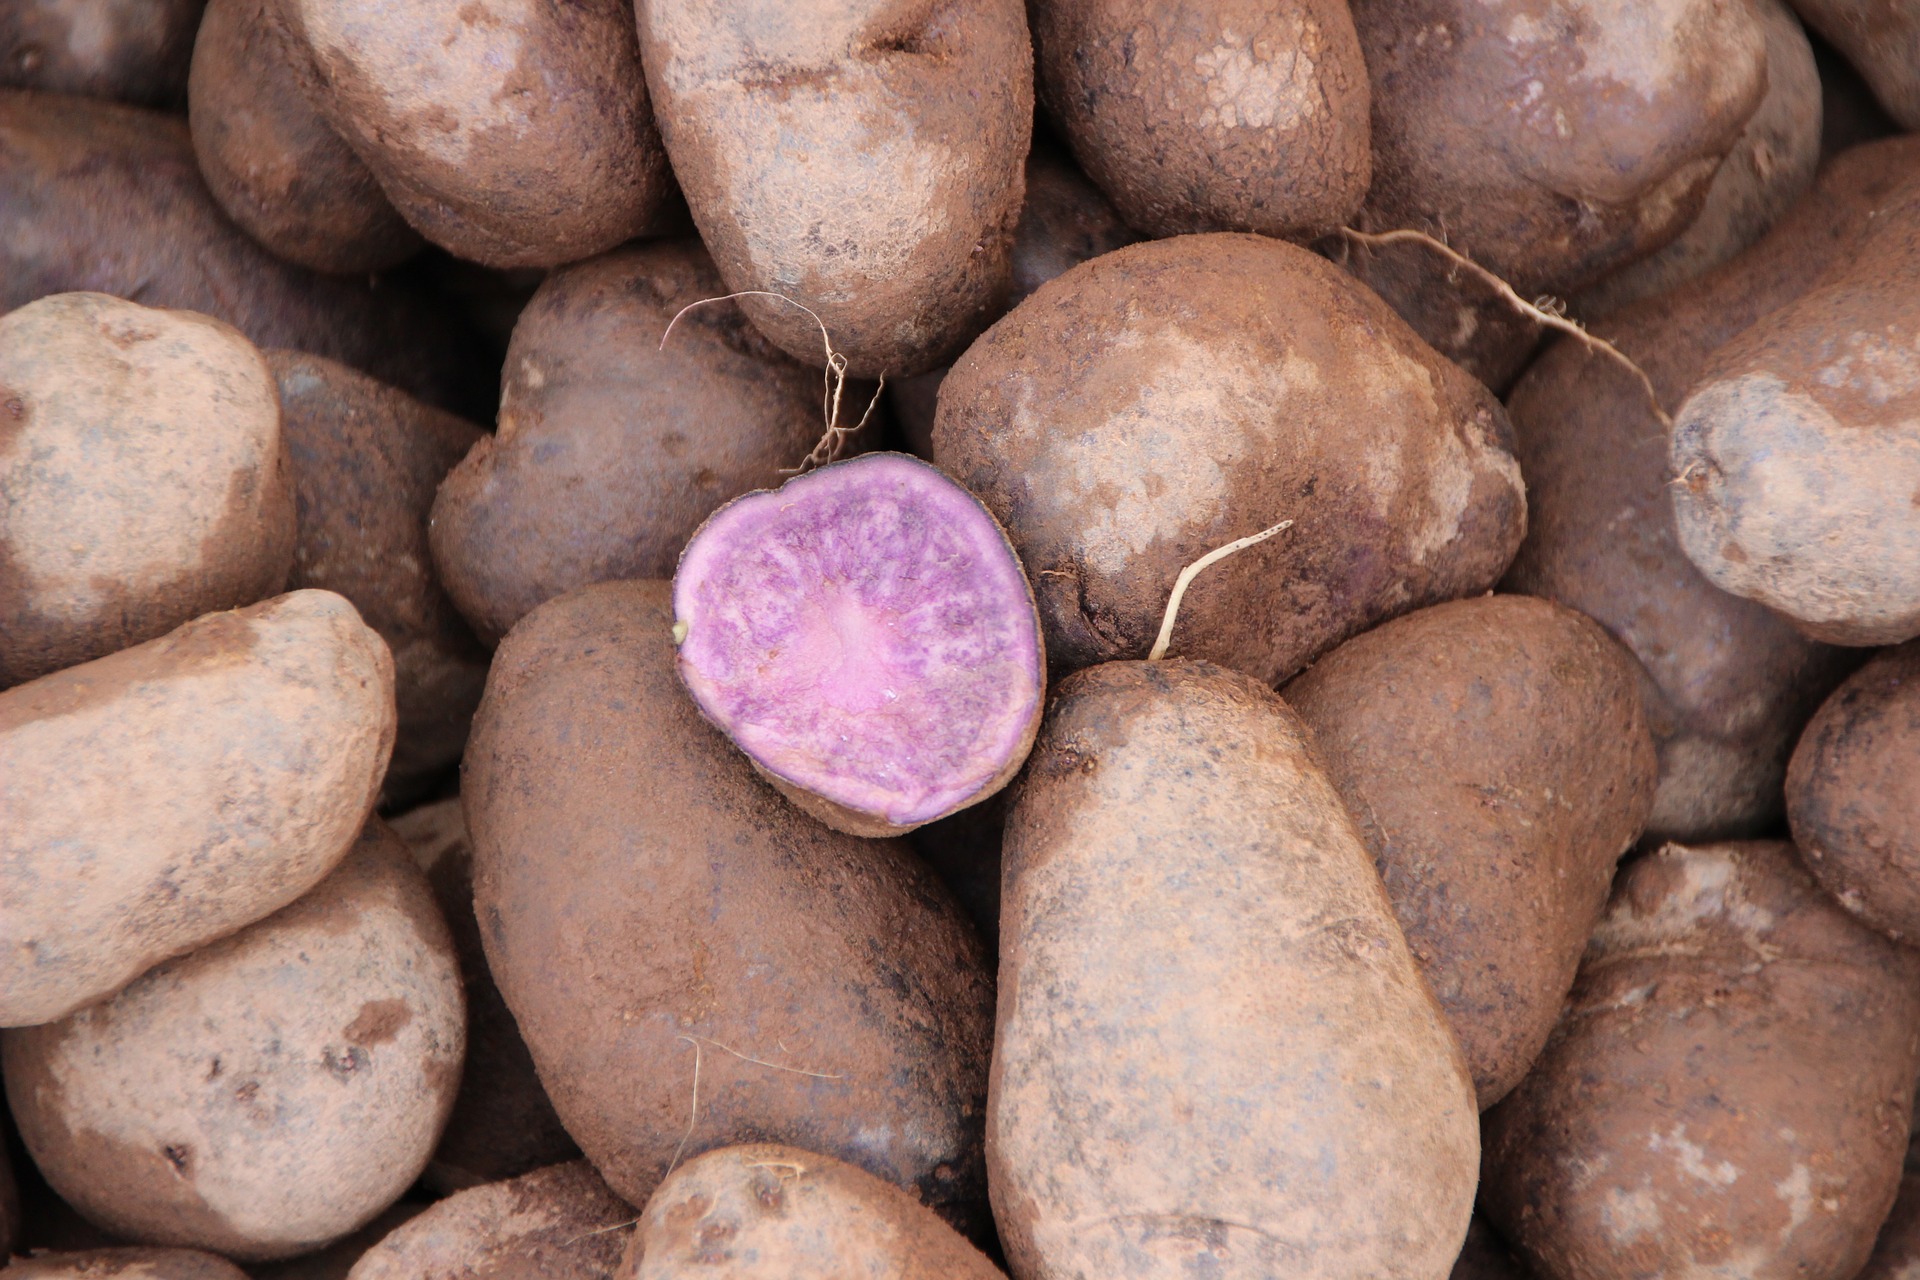 Учёные обнаружили сорт картофеля, снижающий риск развития злокачественной опухоли